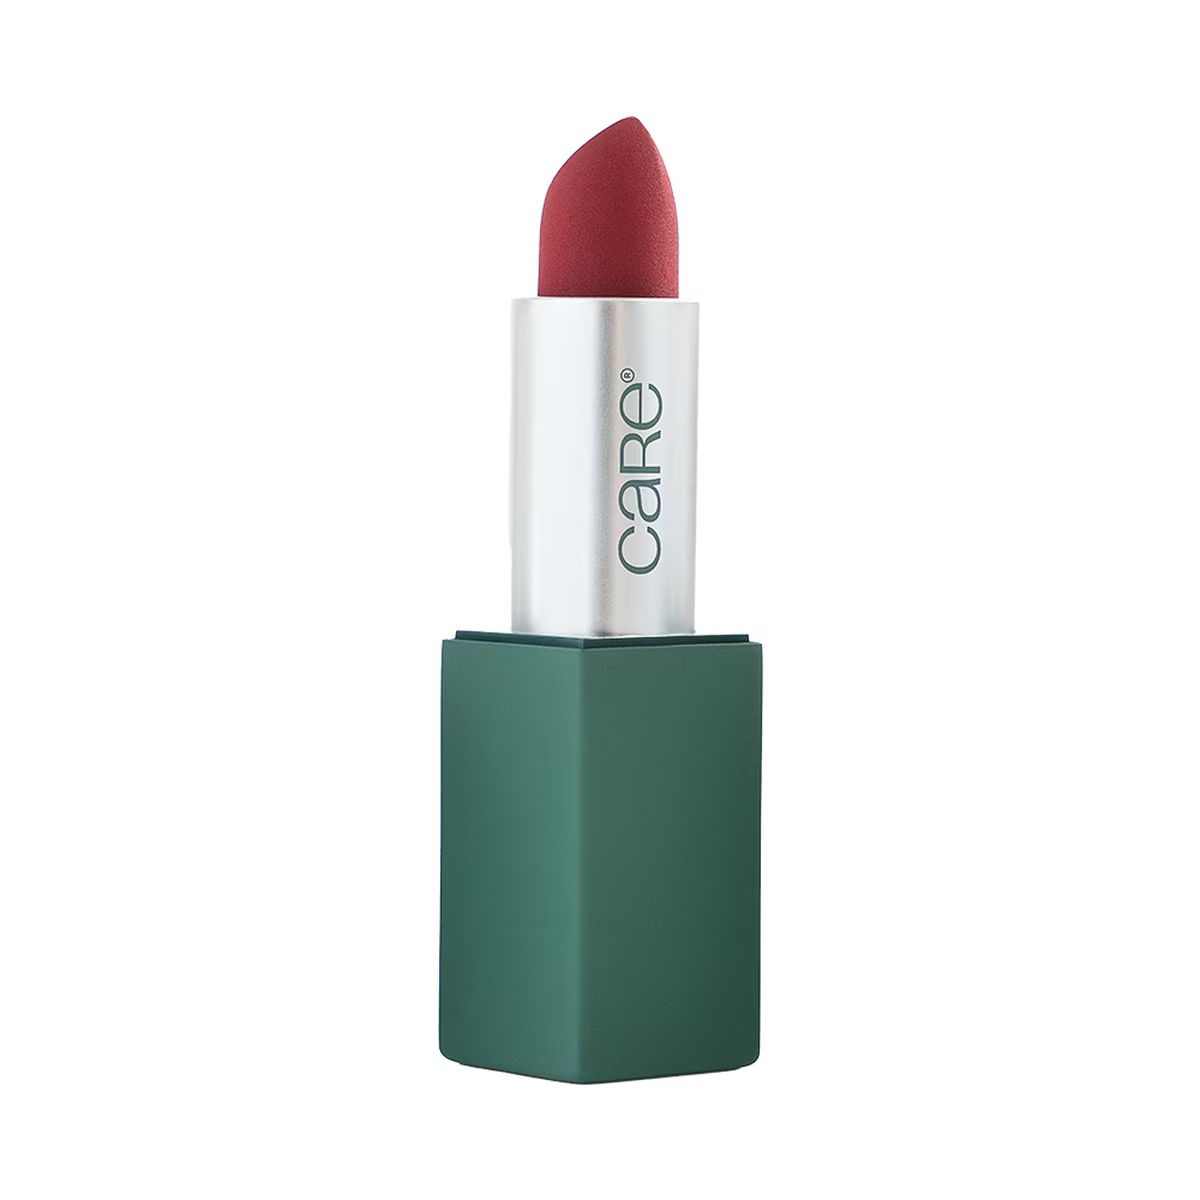 batom care natural beauty lipstick | Sephora (BR)